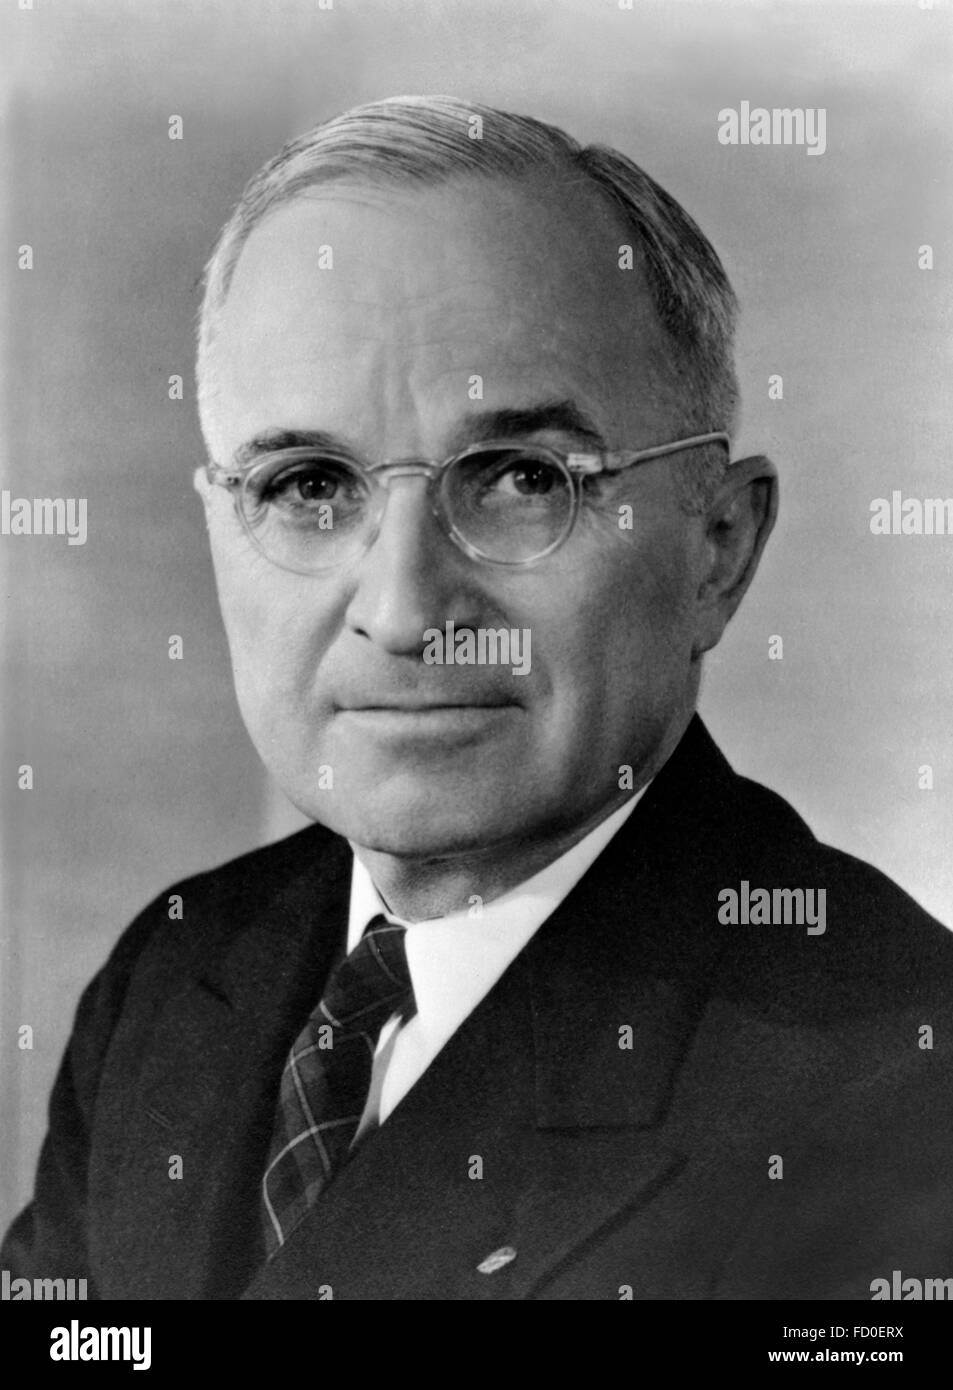 Harry S Truman, ritratto della XXXIII PRESIDENTE DEGLI STATI UNITI D'AMERICA, c.1945 Foto Stock